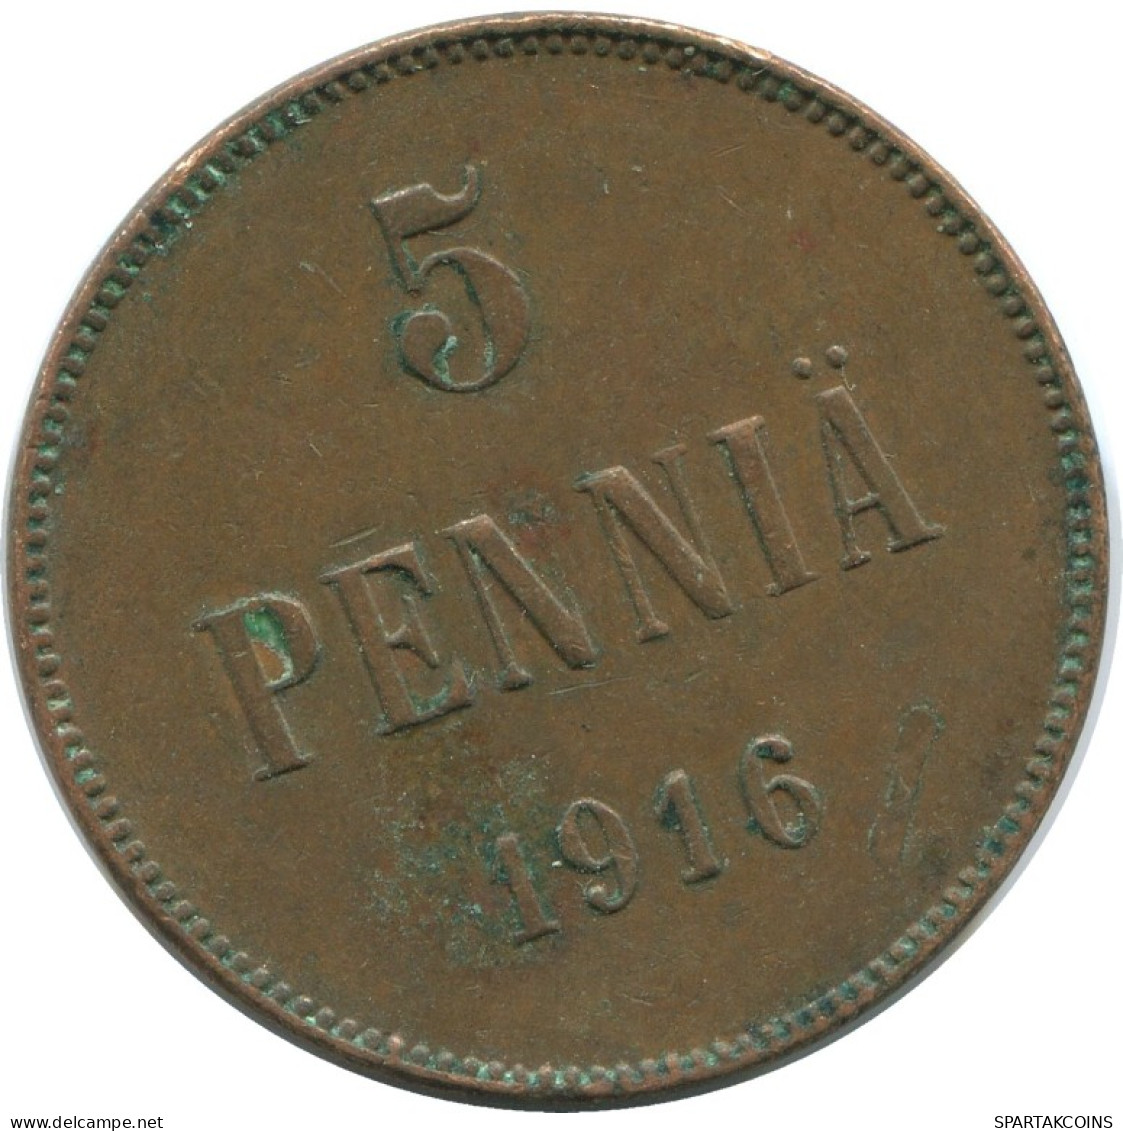 5 PENNIA 1916 FINLAND Coin RUSSIA EMPIRE #AB233.5.U.A - Finland